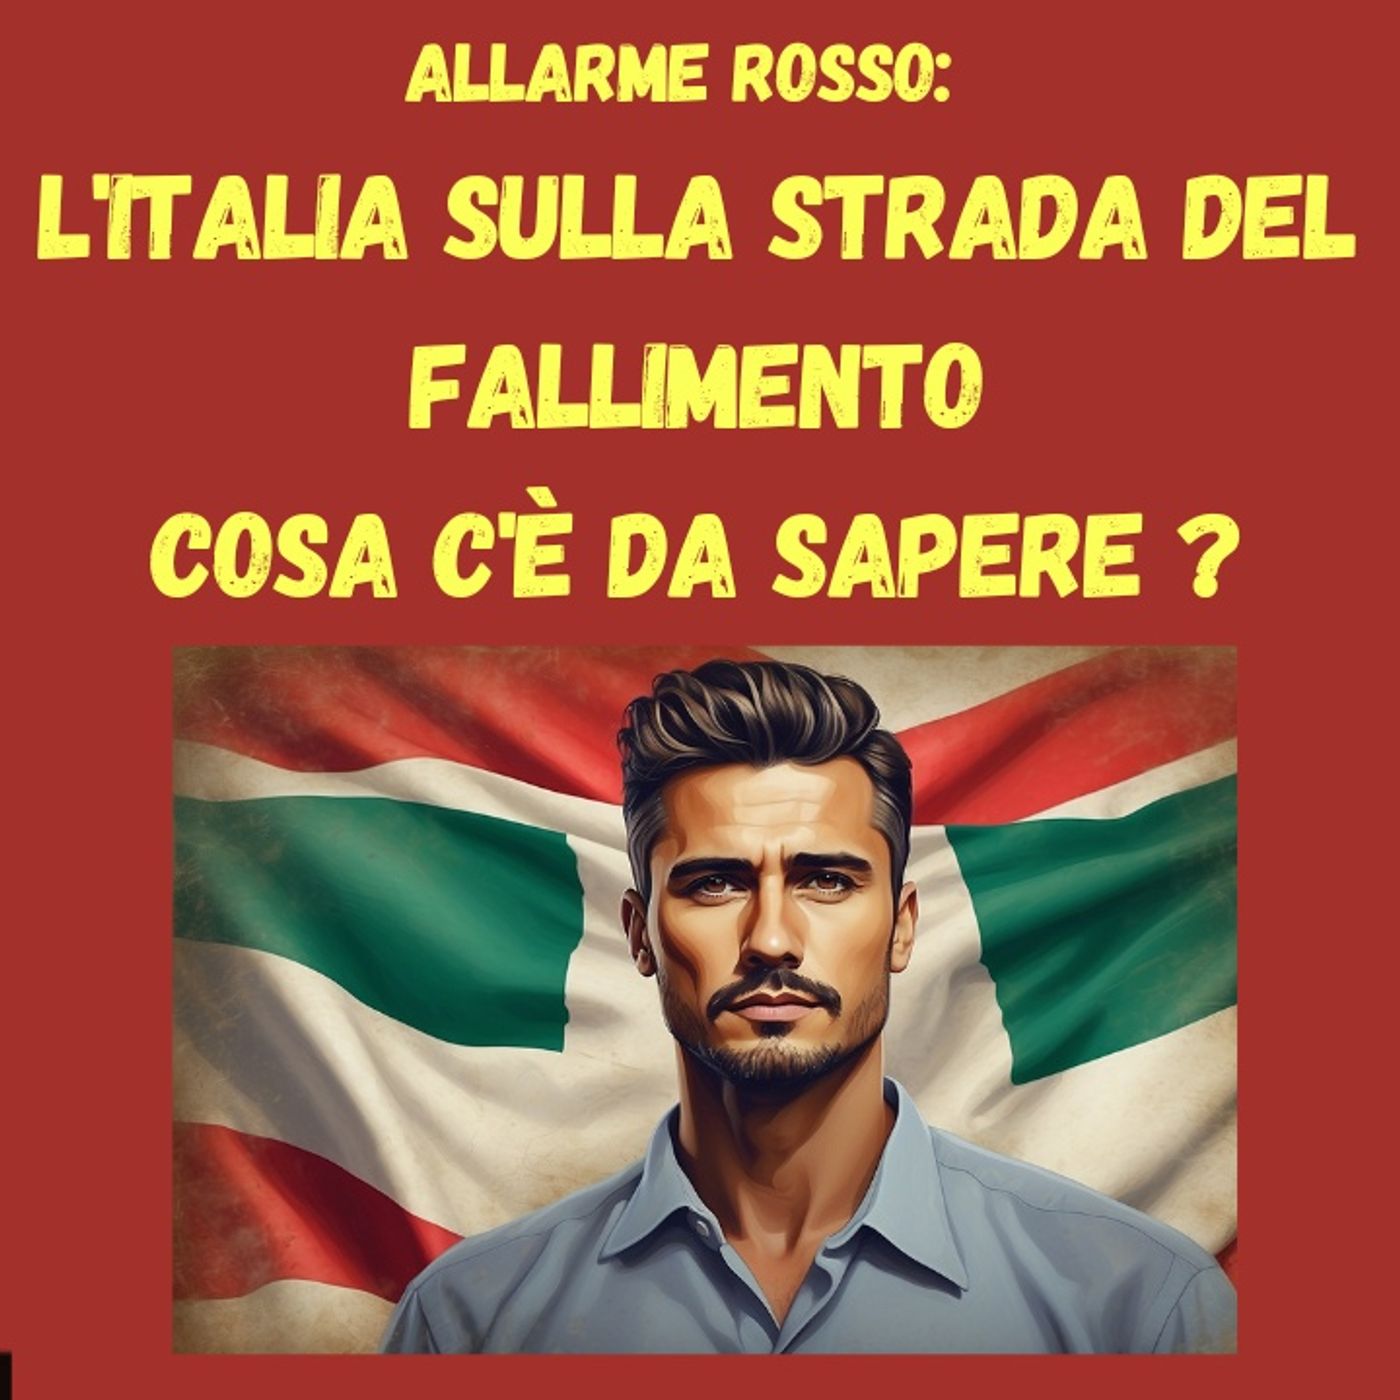 Allarme rosso: L'Italia sulla strada del fallimento - Cosa c'è da sapere ?